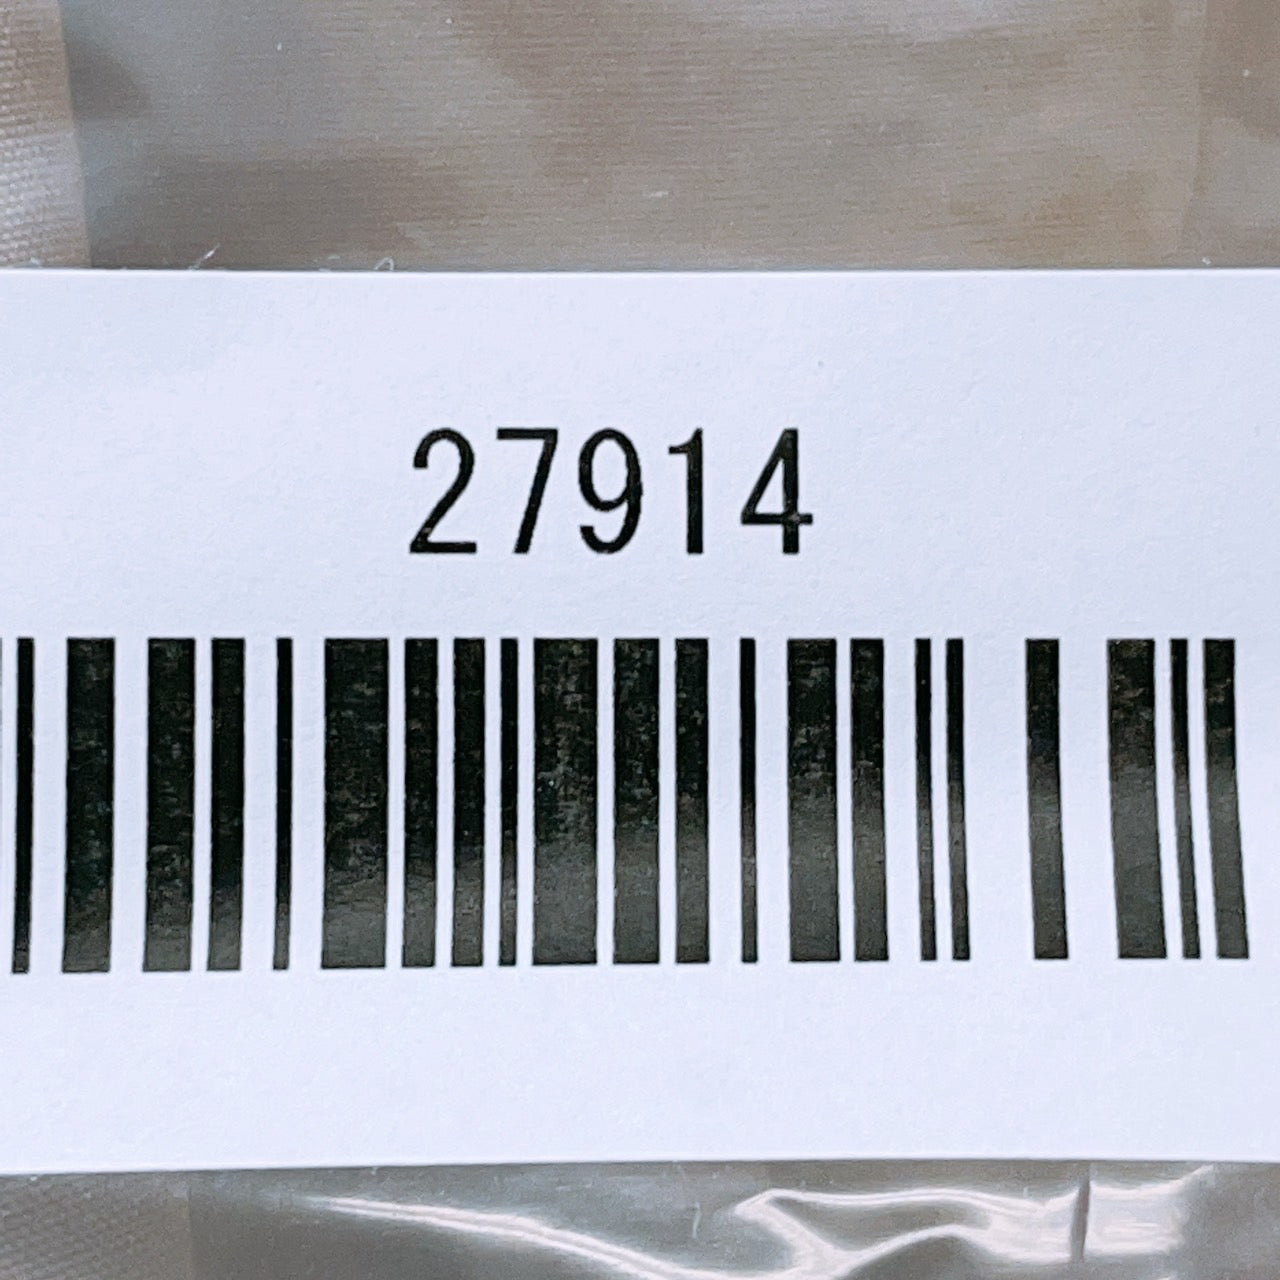 【27914】 INED イネド ミニスカート サイズ7 / 約XS(SS) ブラウン 台形スカート タック バックファスナー シンプル 日本製 レディース